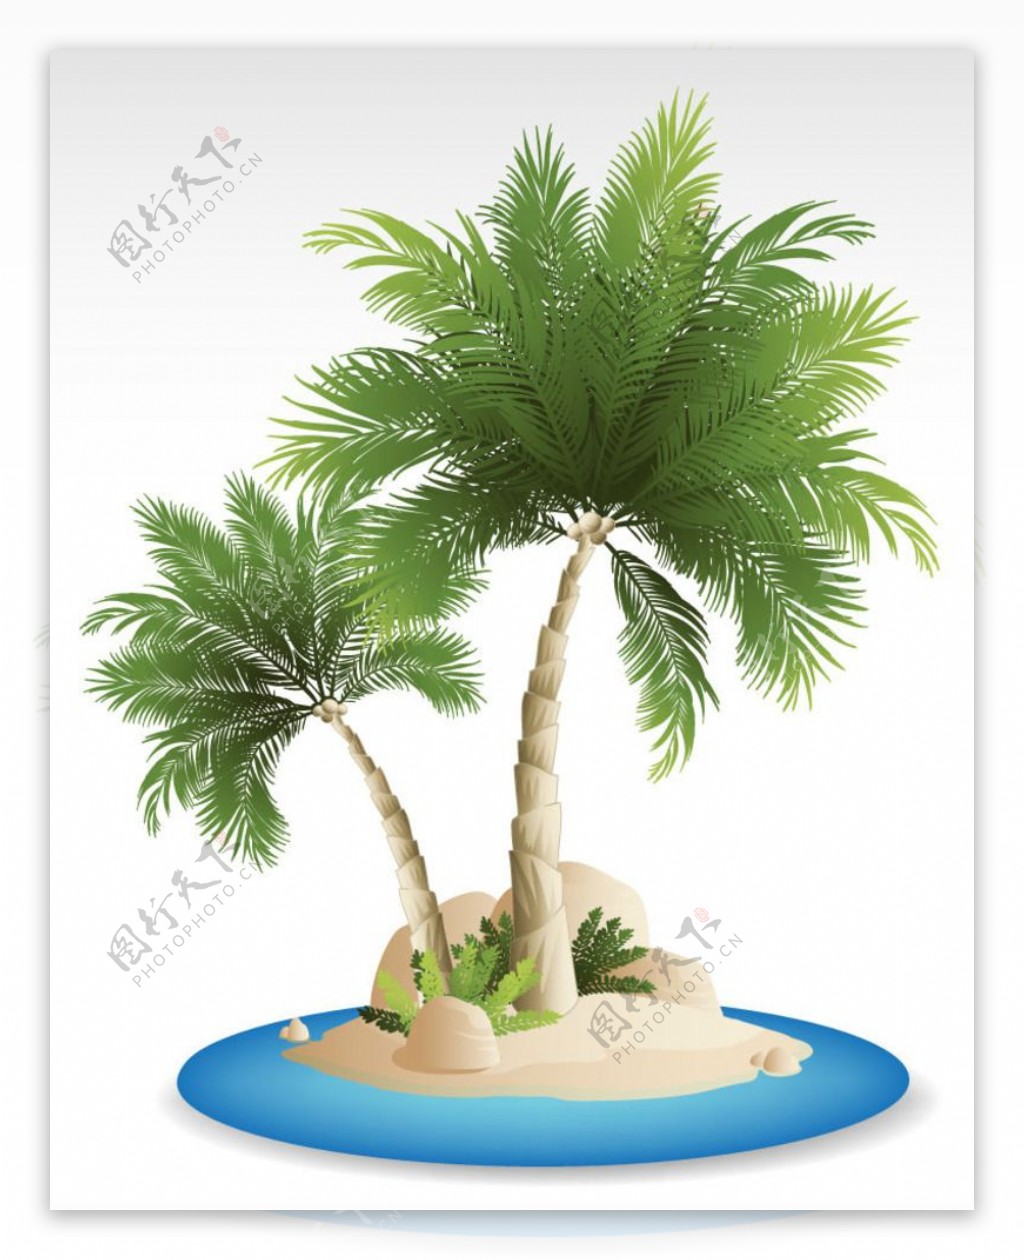 沙滩椰子树背景矢量素材